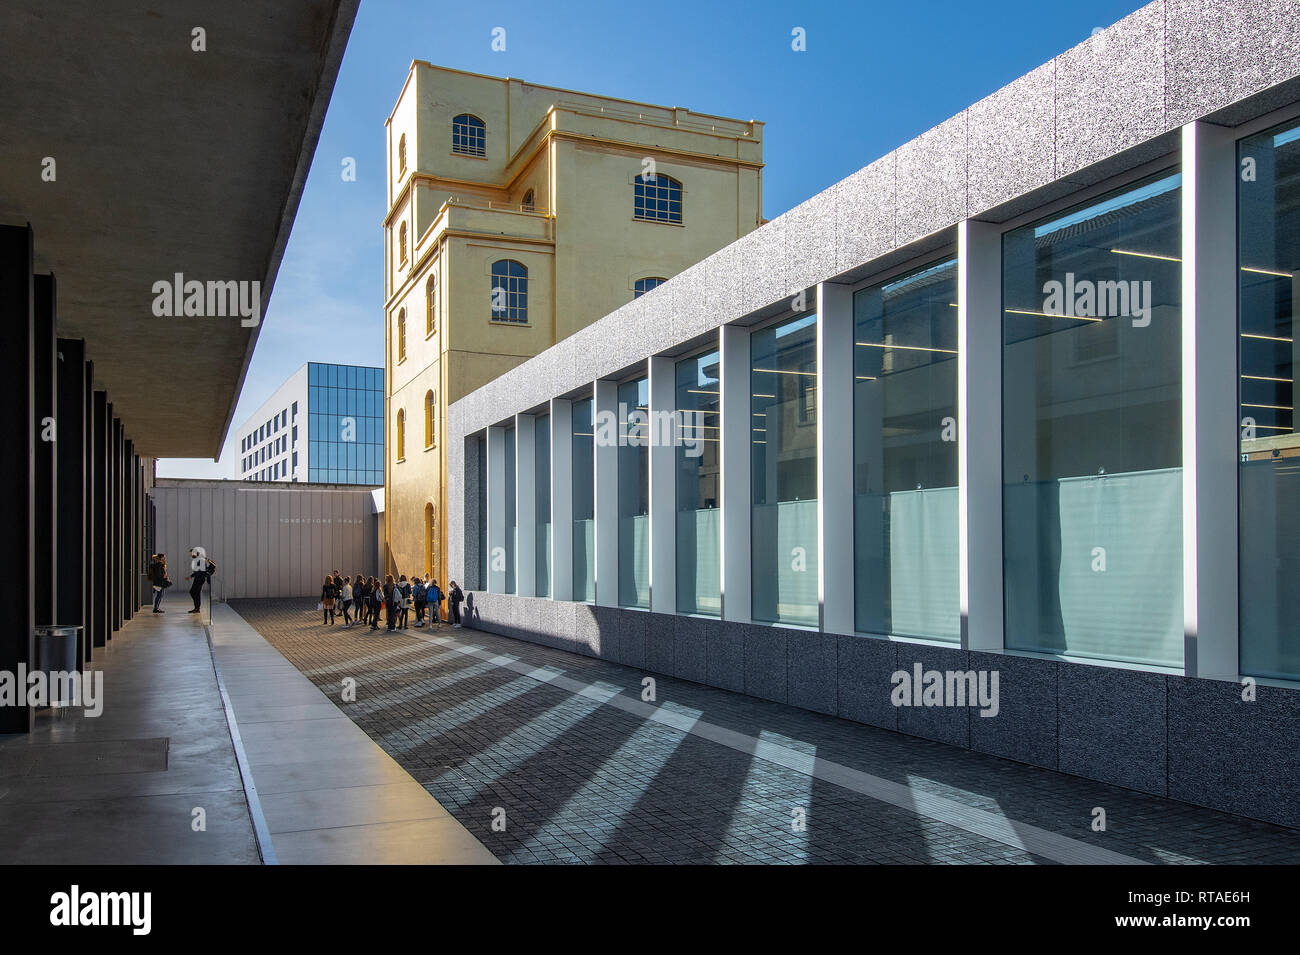 Le bâtiment d'or de la soi-disant maison hantée, Fondazione Prada, extérieur, Milan, Italie Banque D'Images